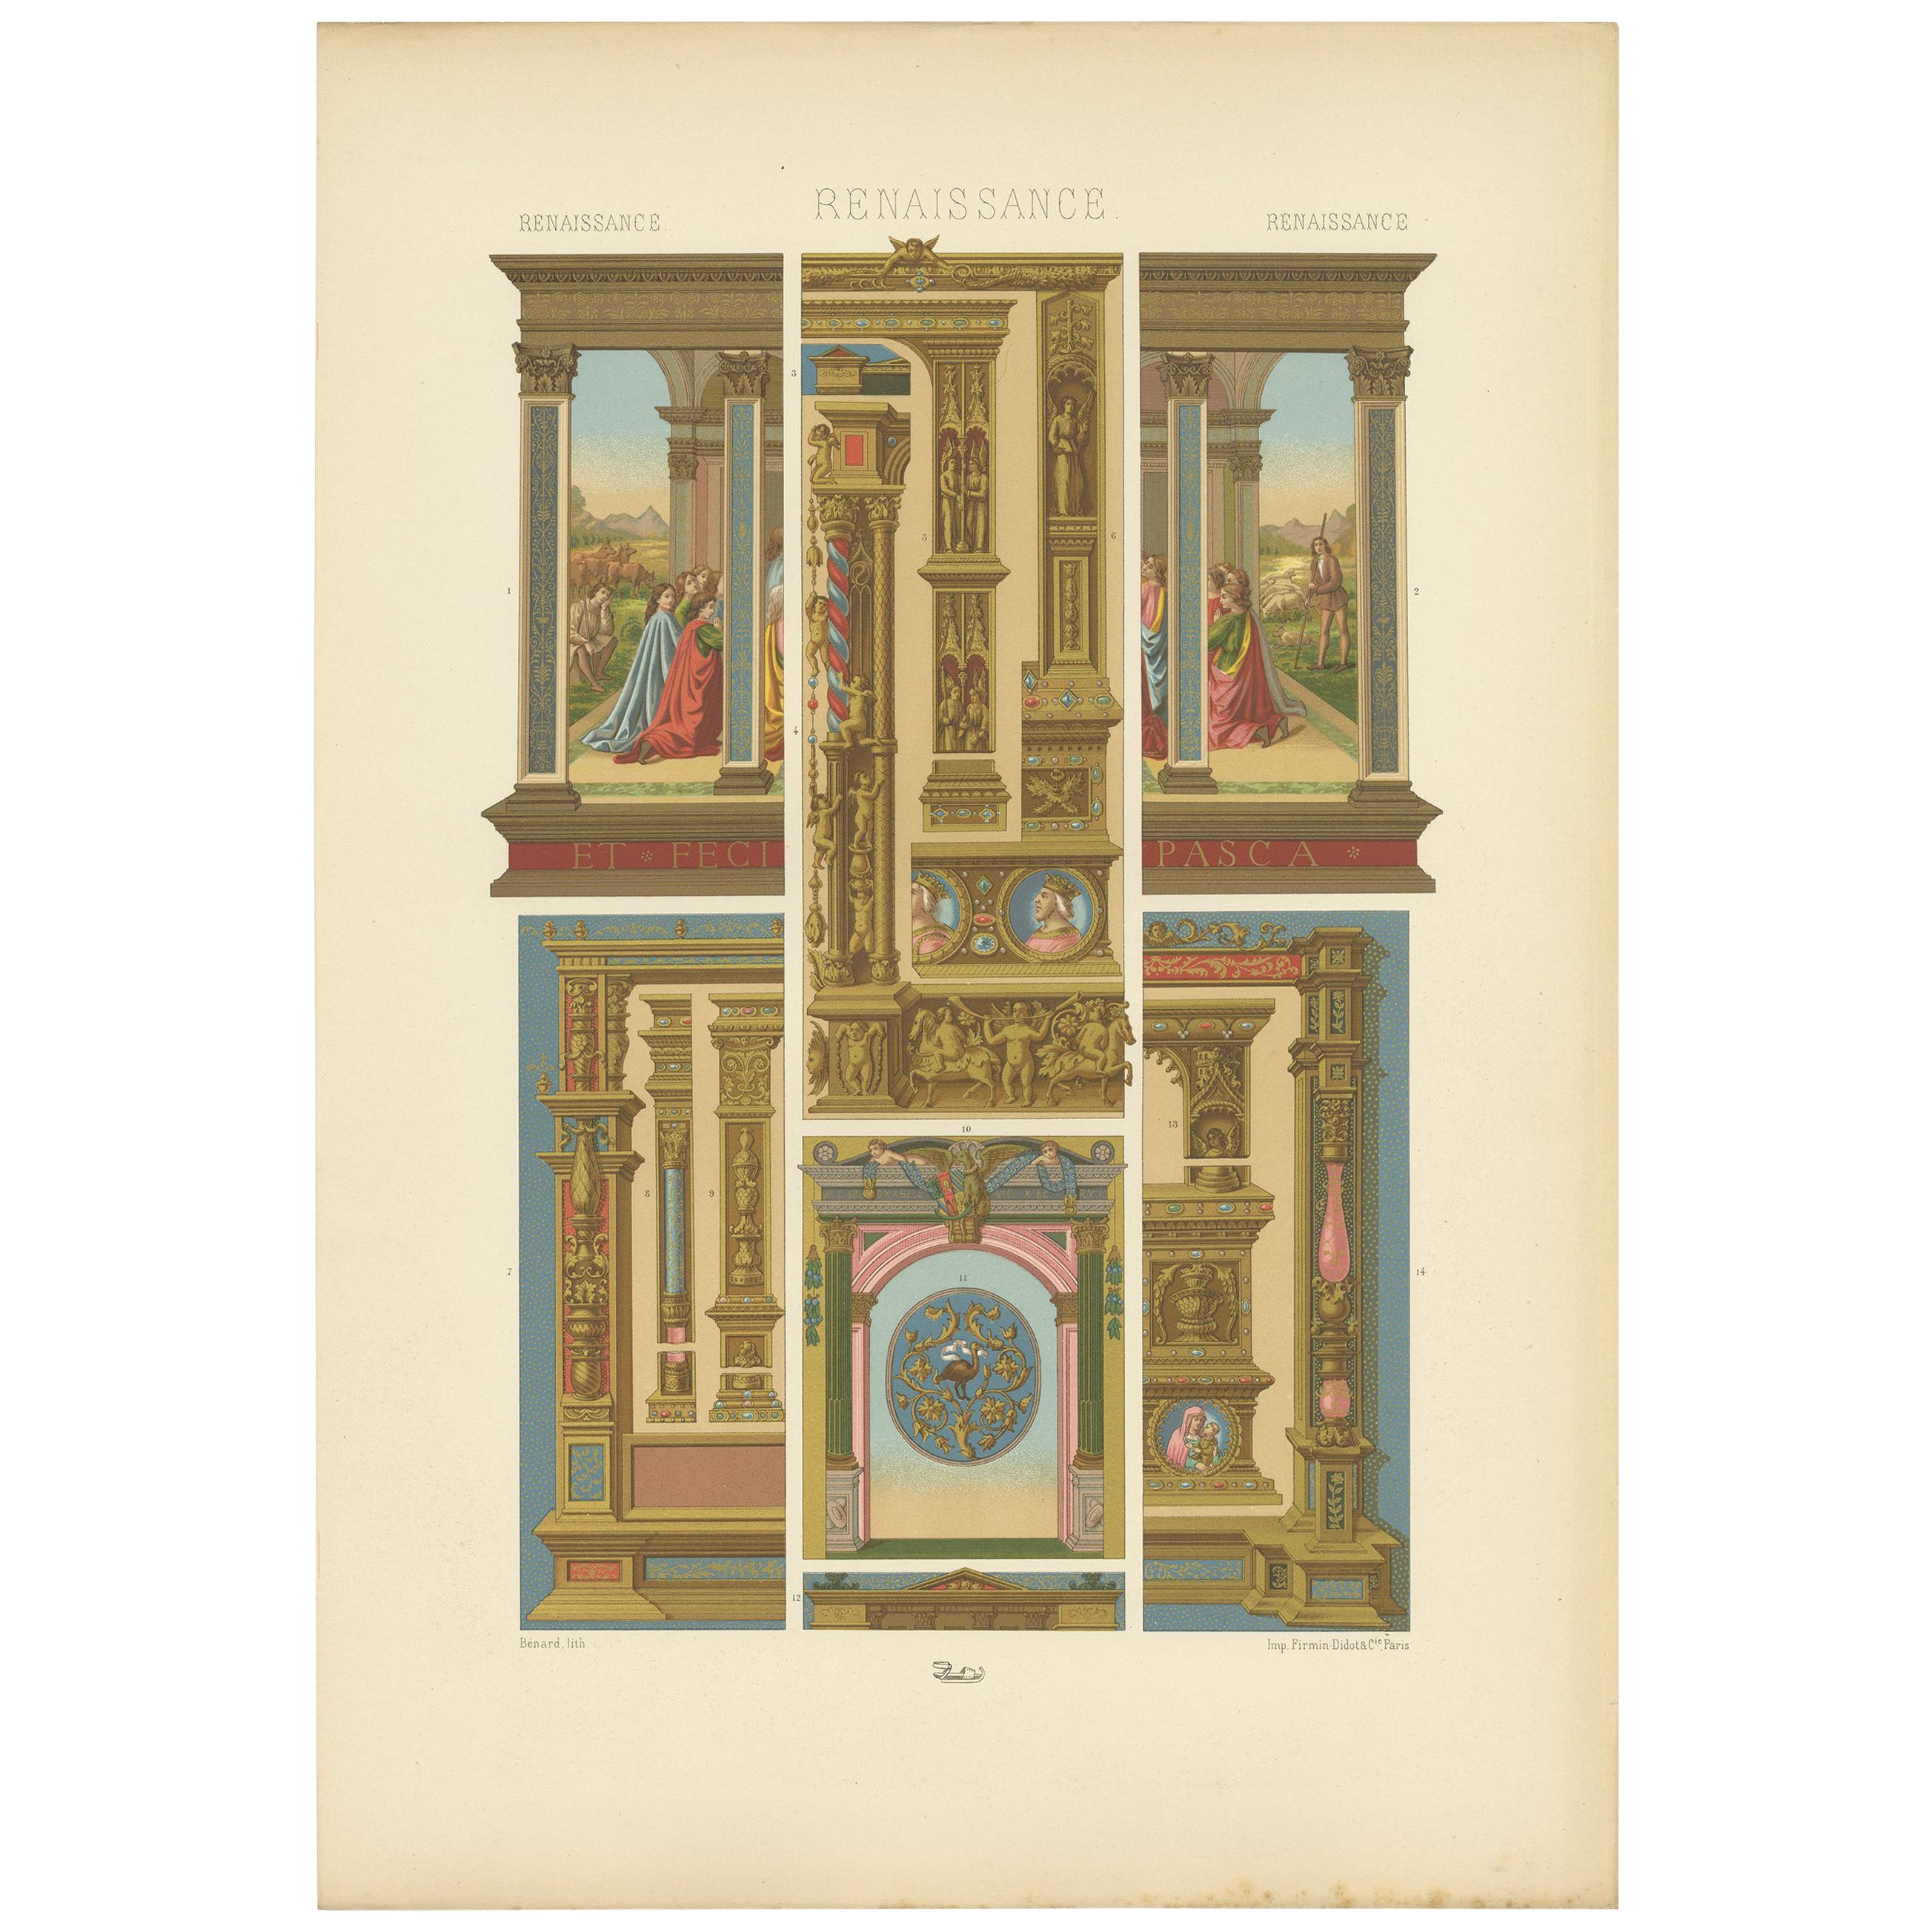 Pl. 80 Antique Print of Renaissance Architectural &Metalwork by Racinet 'c.1890'